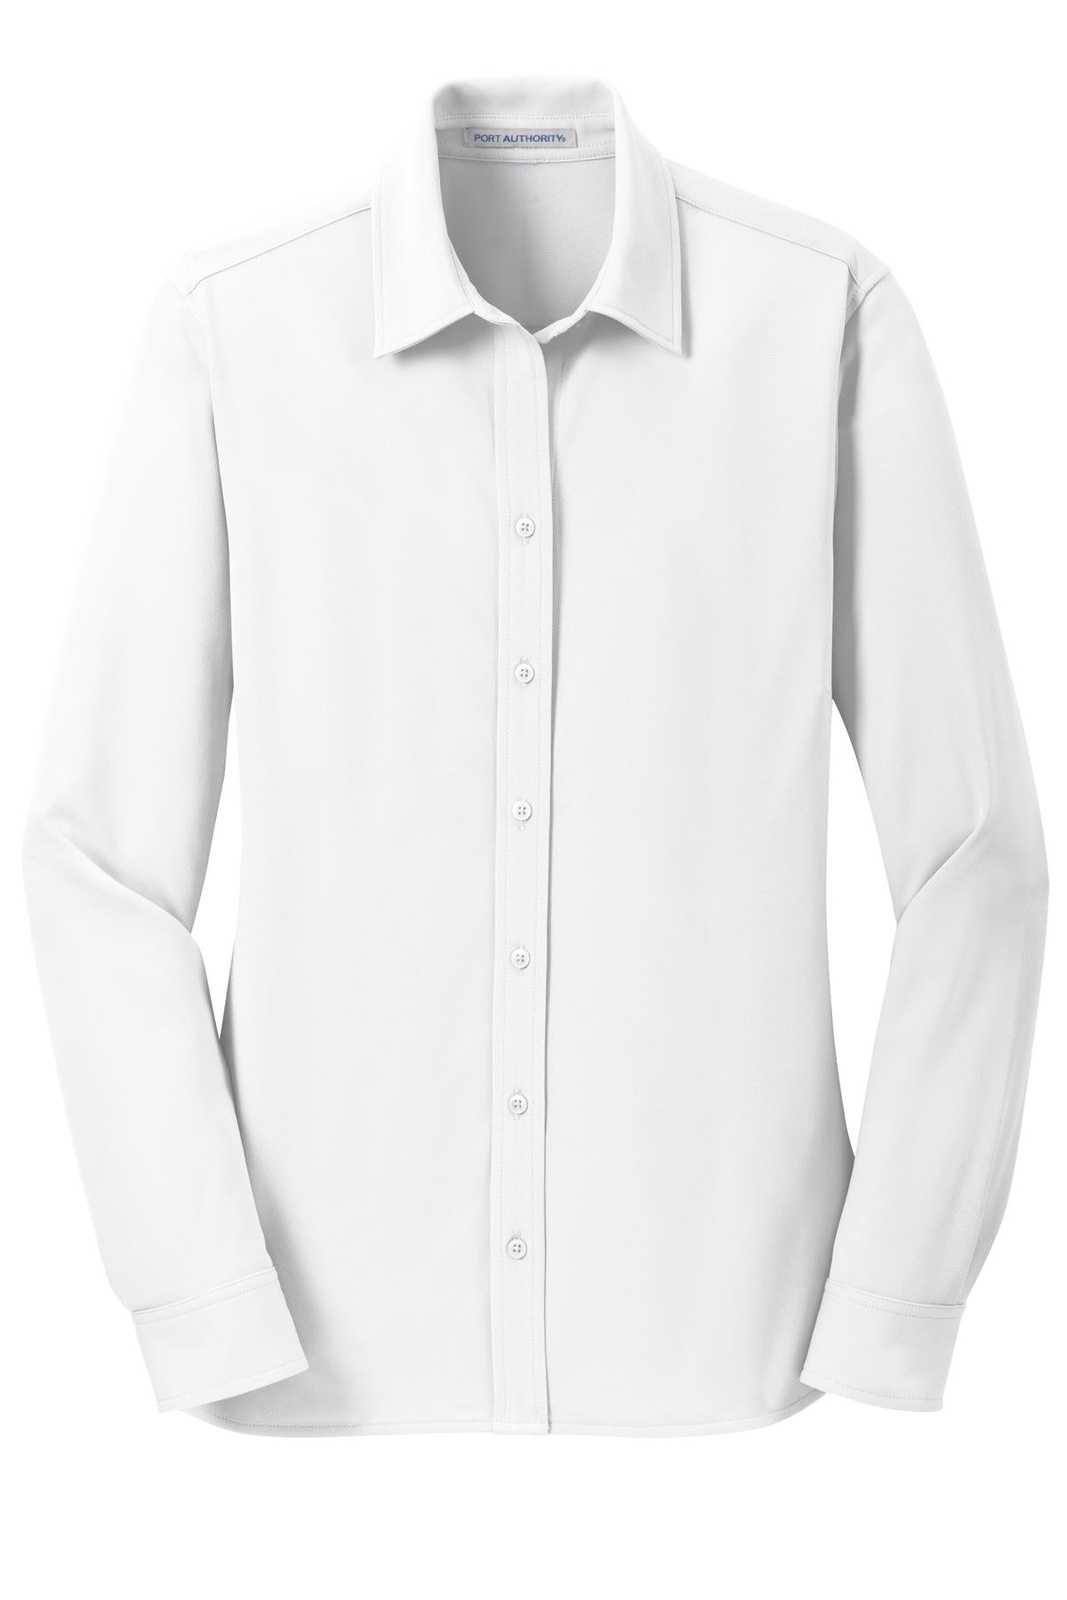 Port Authority L570 Ladies Dimension Knit Dress Shirt - White - HIT a Double - 5